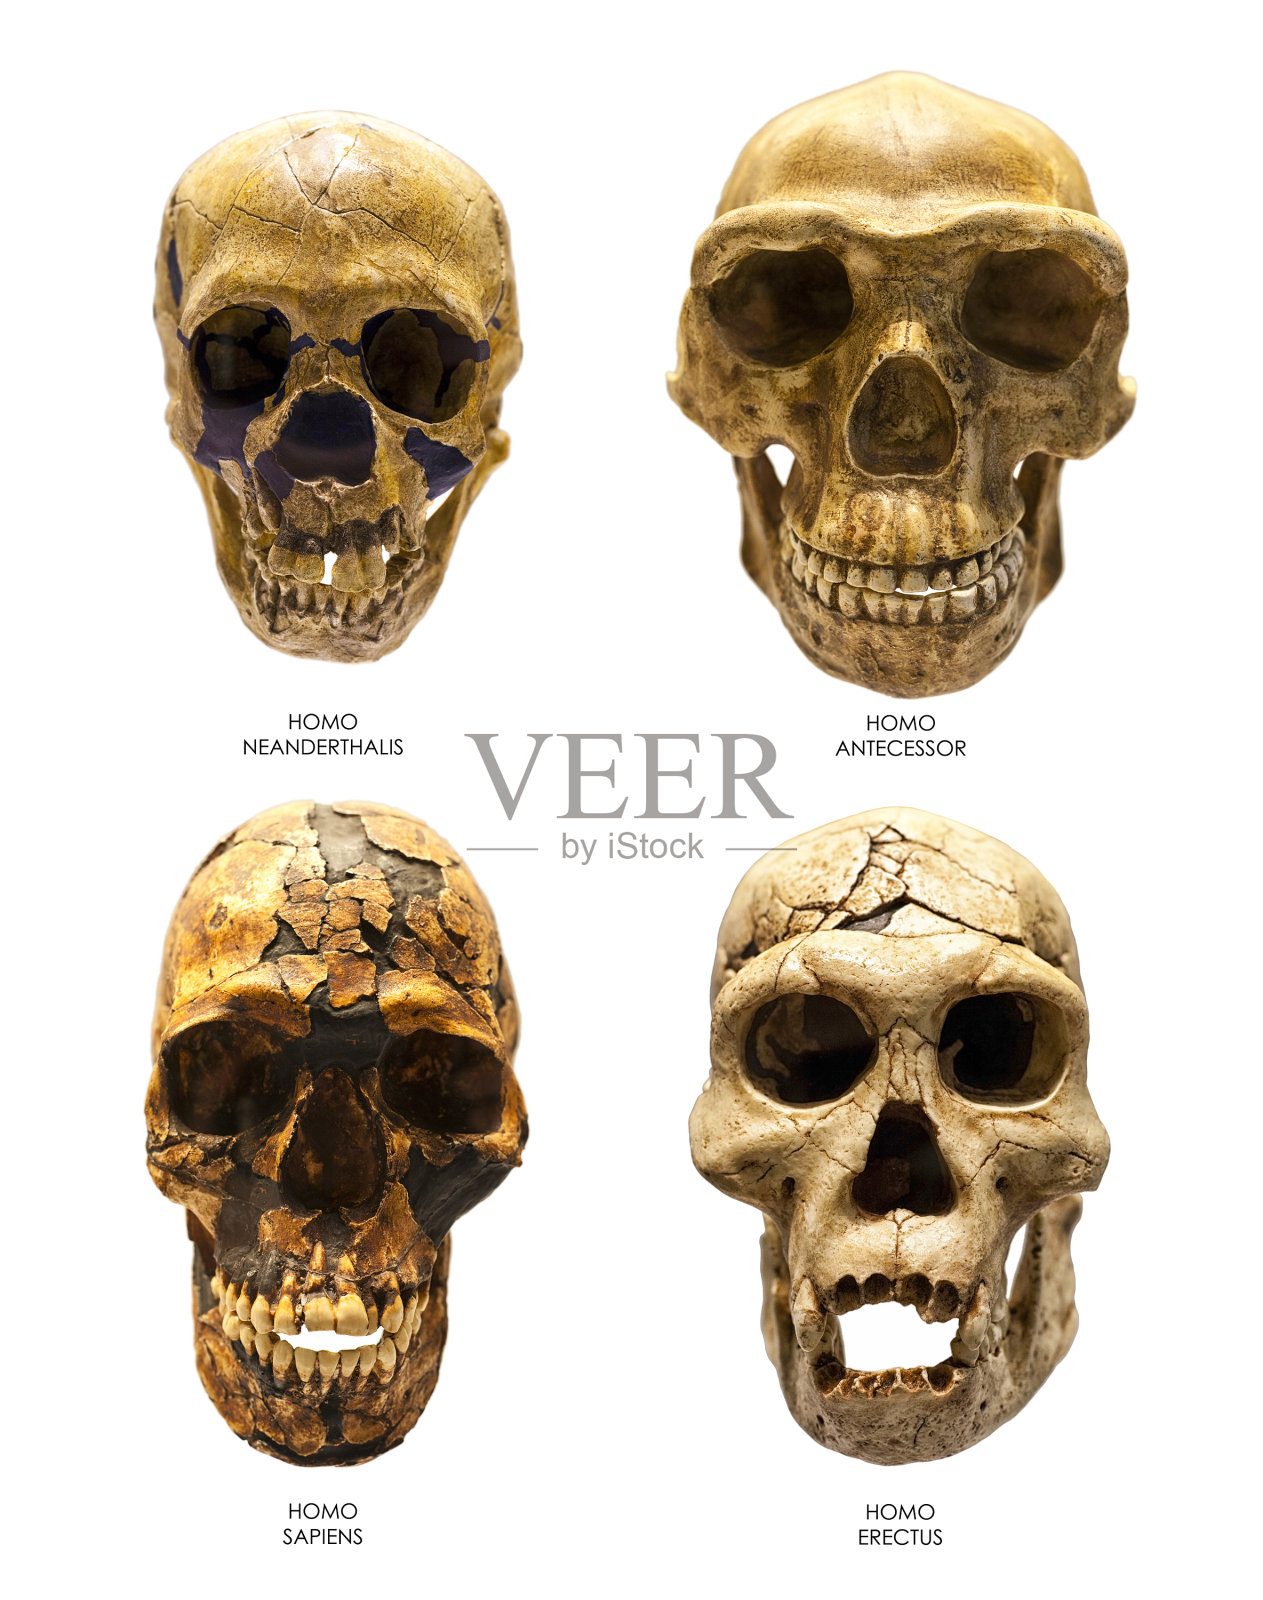 直立人、智人、尼安德特人和祖先的头骨化石照片摄影图片